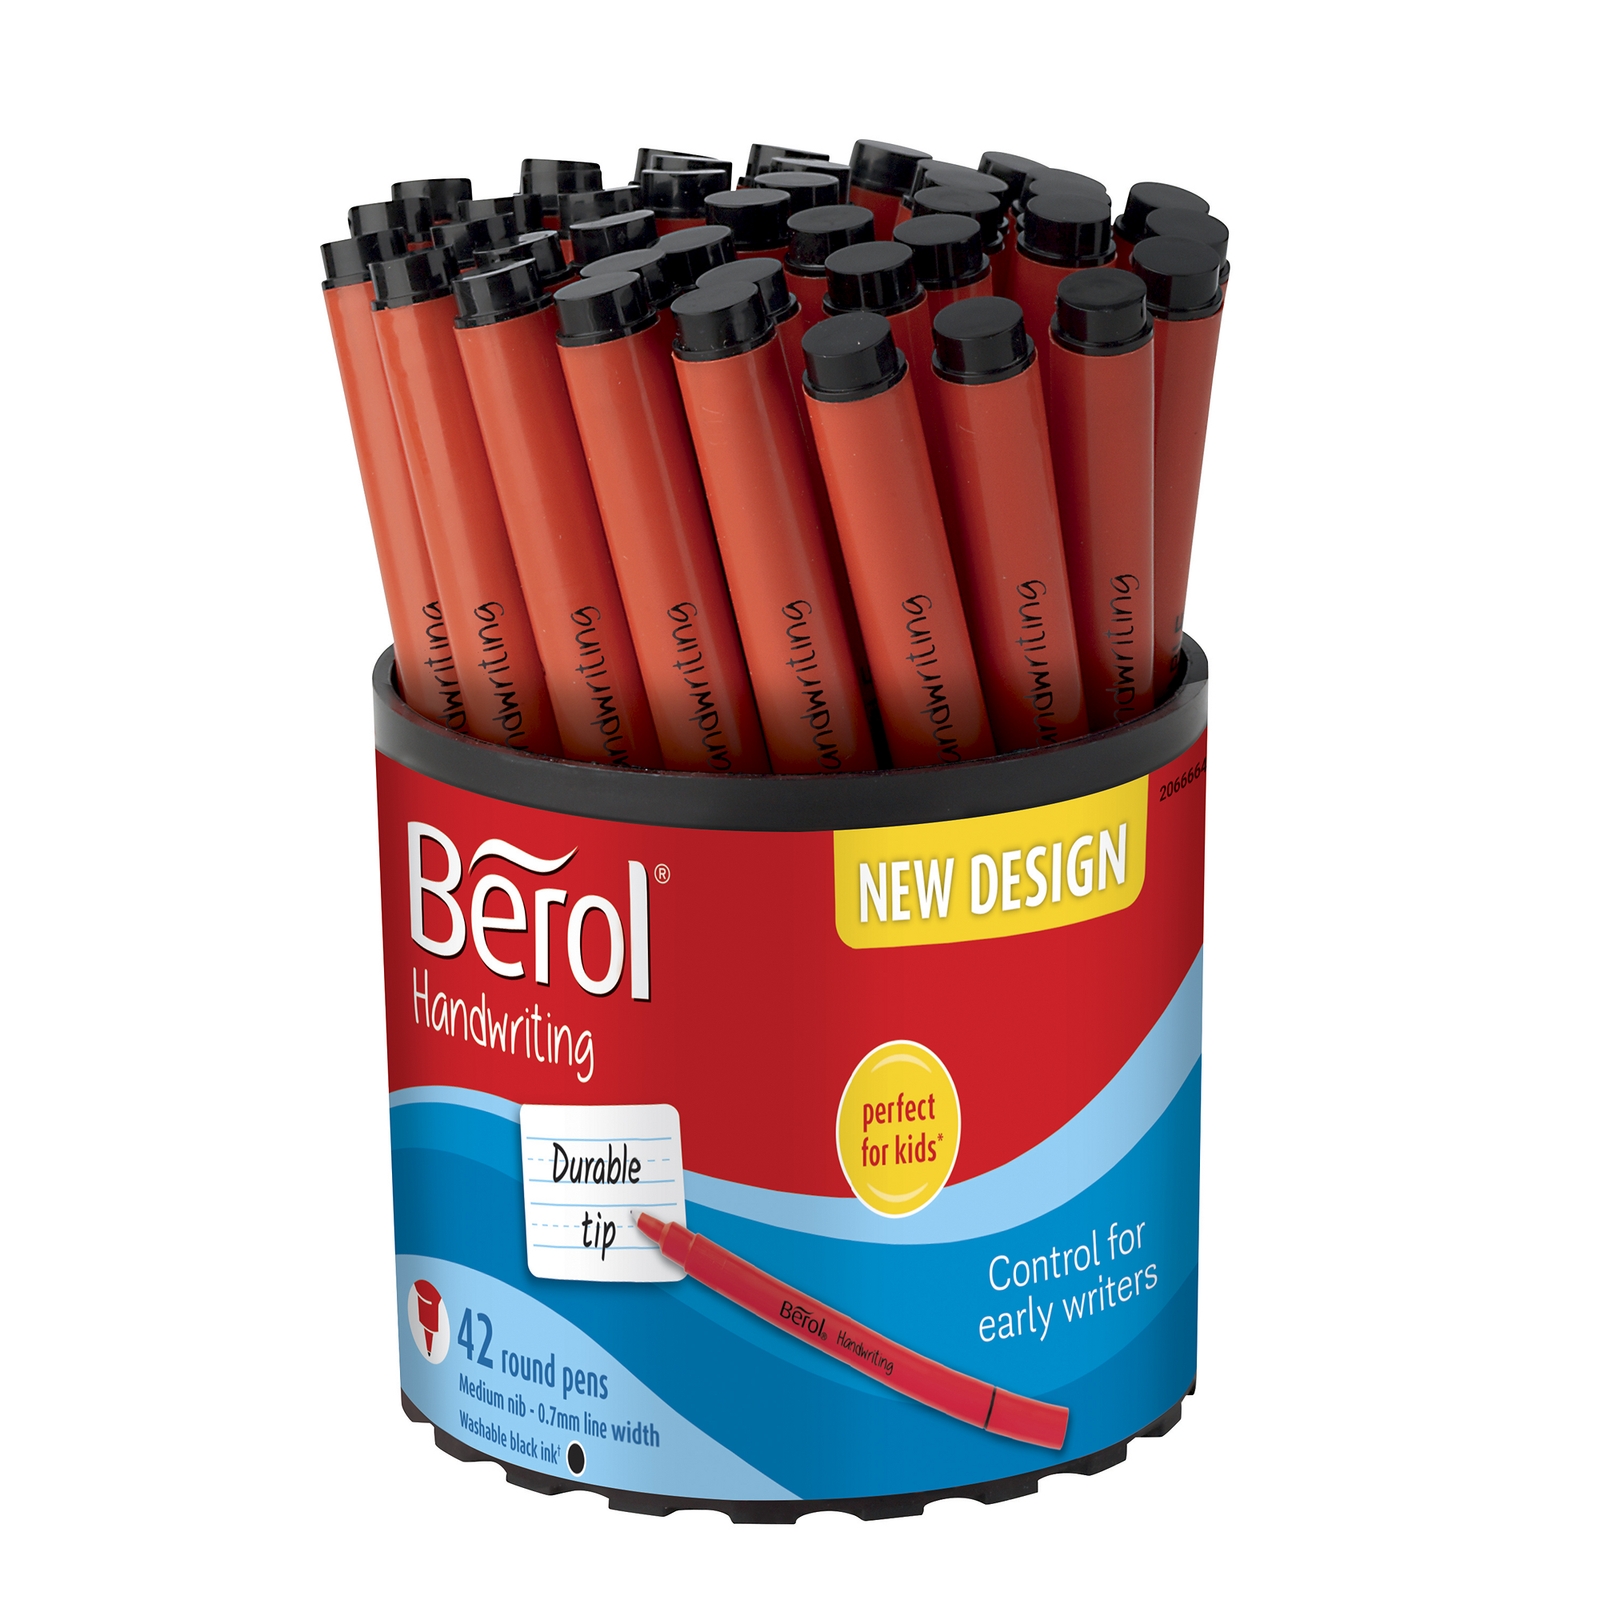 Berol Handwriting Pen - Black, Pack of 42